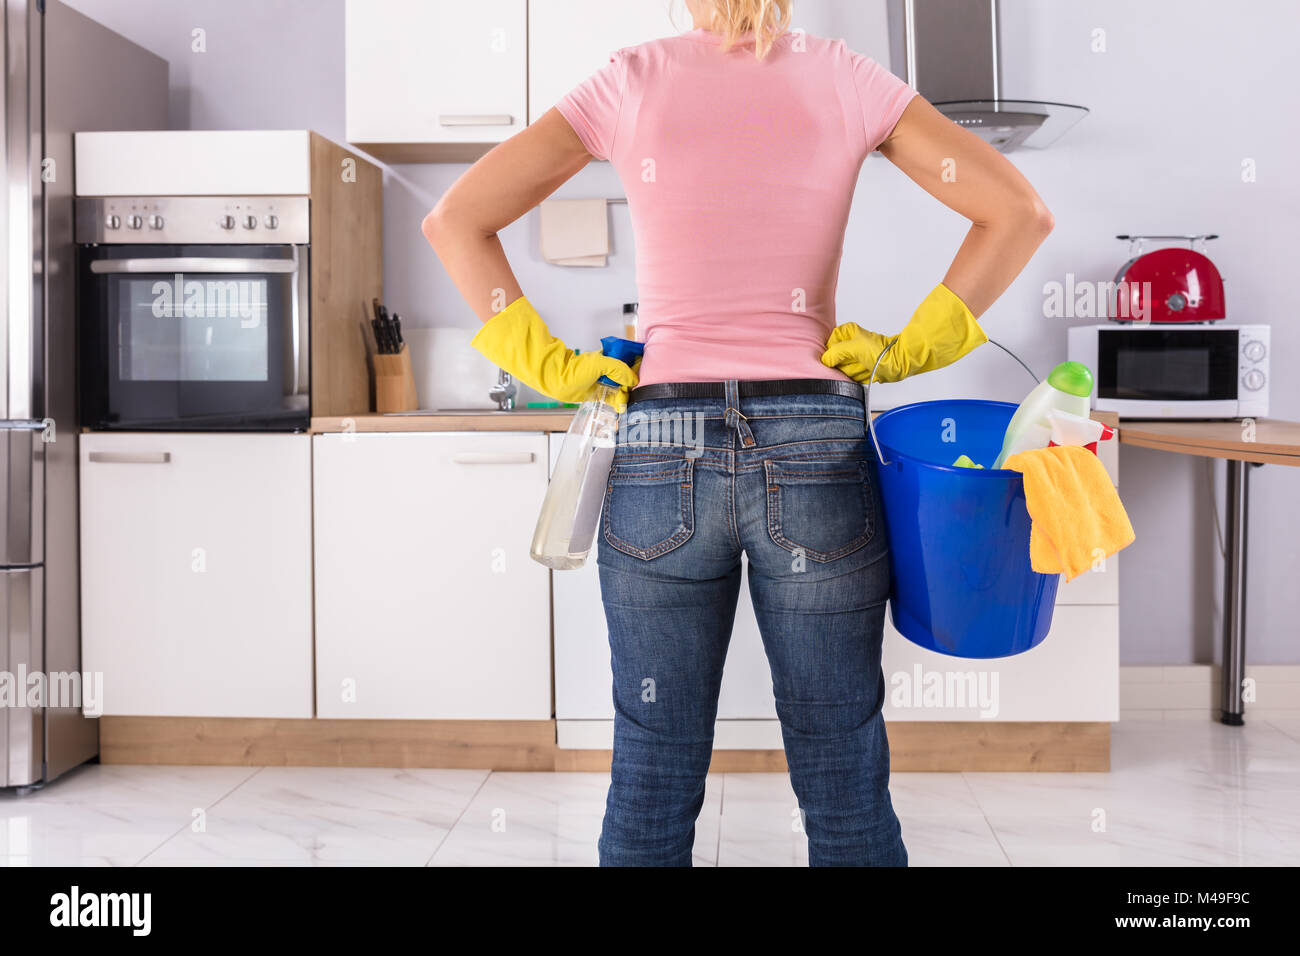 Ansicht der Rückseite Frau mit Reinigung von Werkzeugen und Produkten im Eimer in der Küche Stockfoto